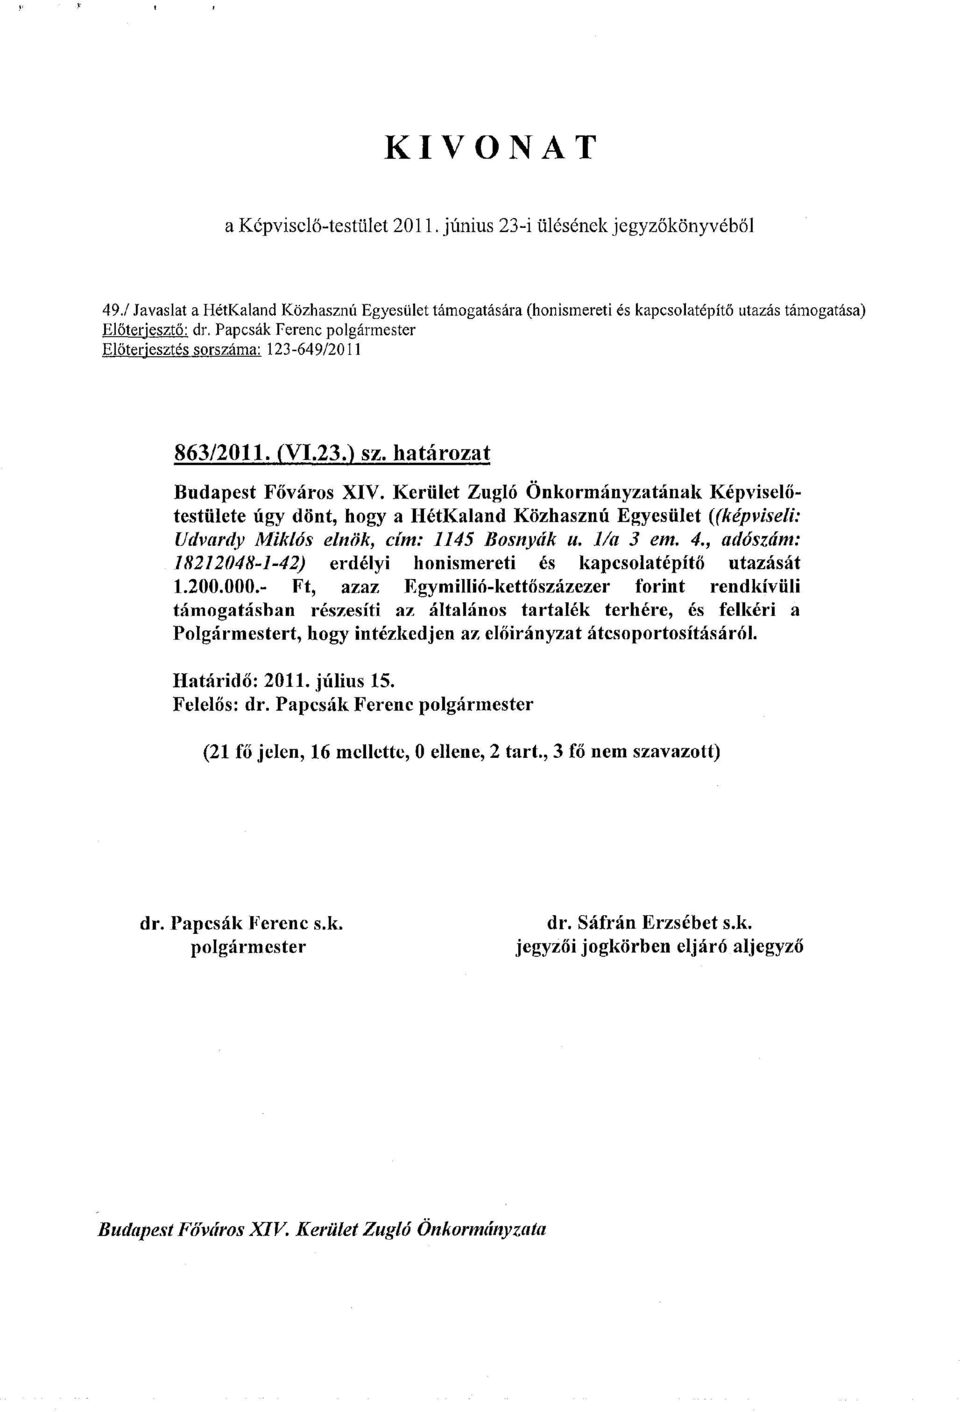 Kerület Zugló Önkormányzatának Képviselőtestülete úgy dönt, hogy a HétKaland Közhasznú Egyesület ((képviseli: Udvardy Miklós elnök, cím: 1145 Bosnyák u. l/a 3 em. 4.